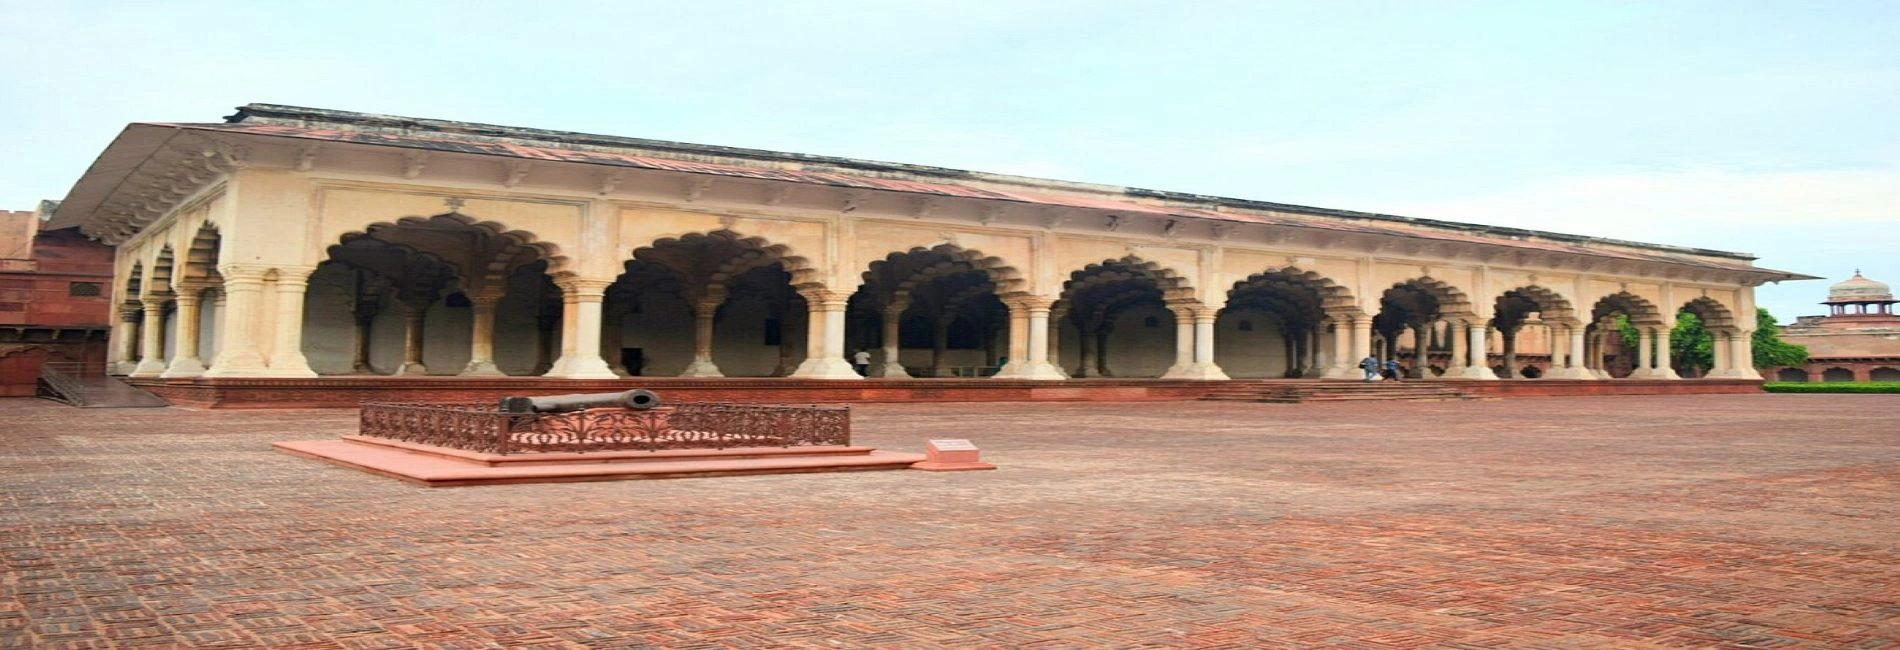 Diwan-i-Am Agra Fort